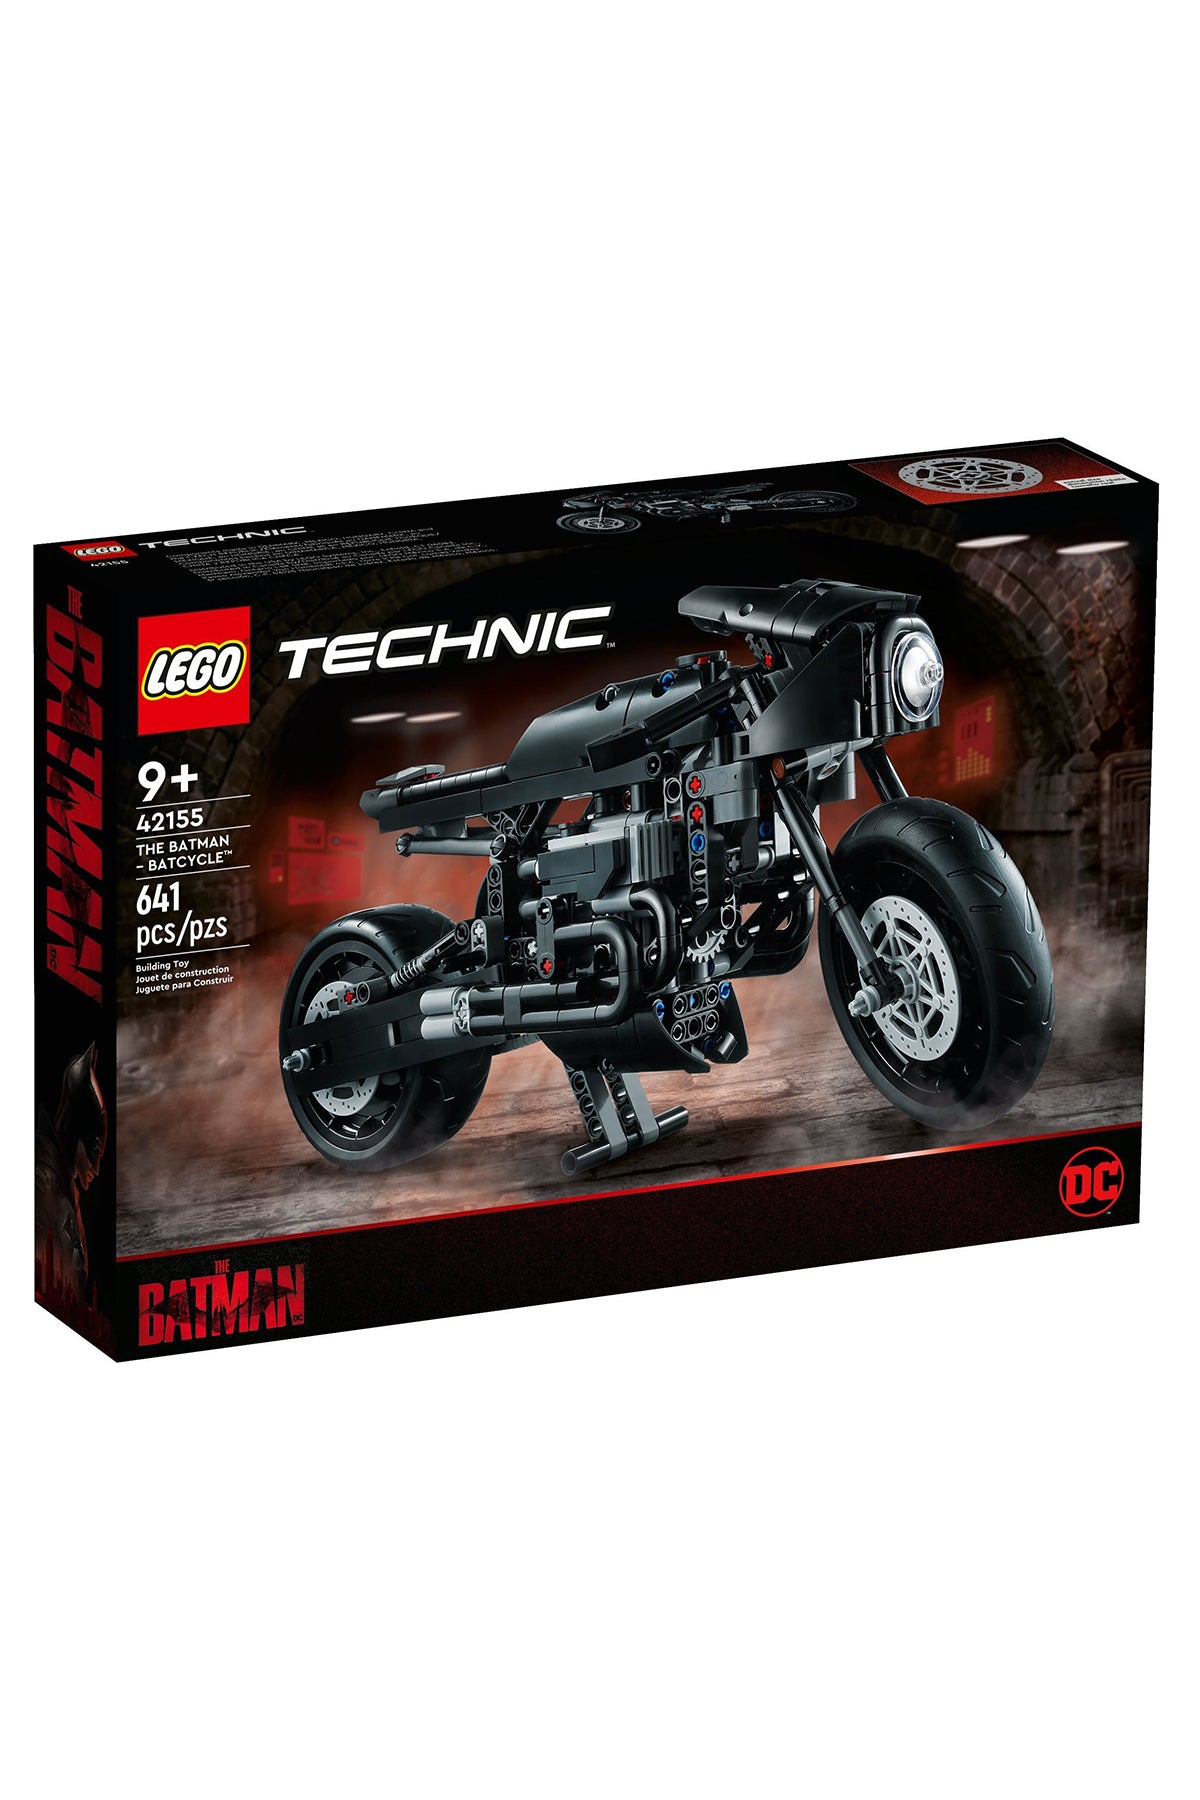 Lego Technic : The Batman Batcycle